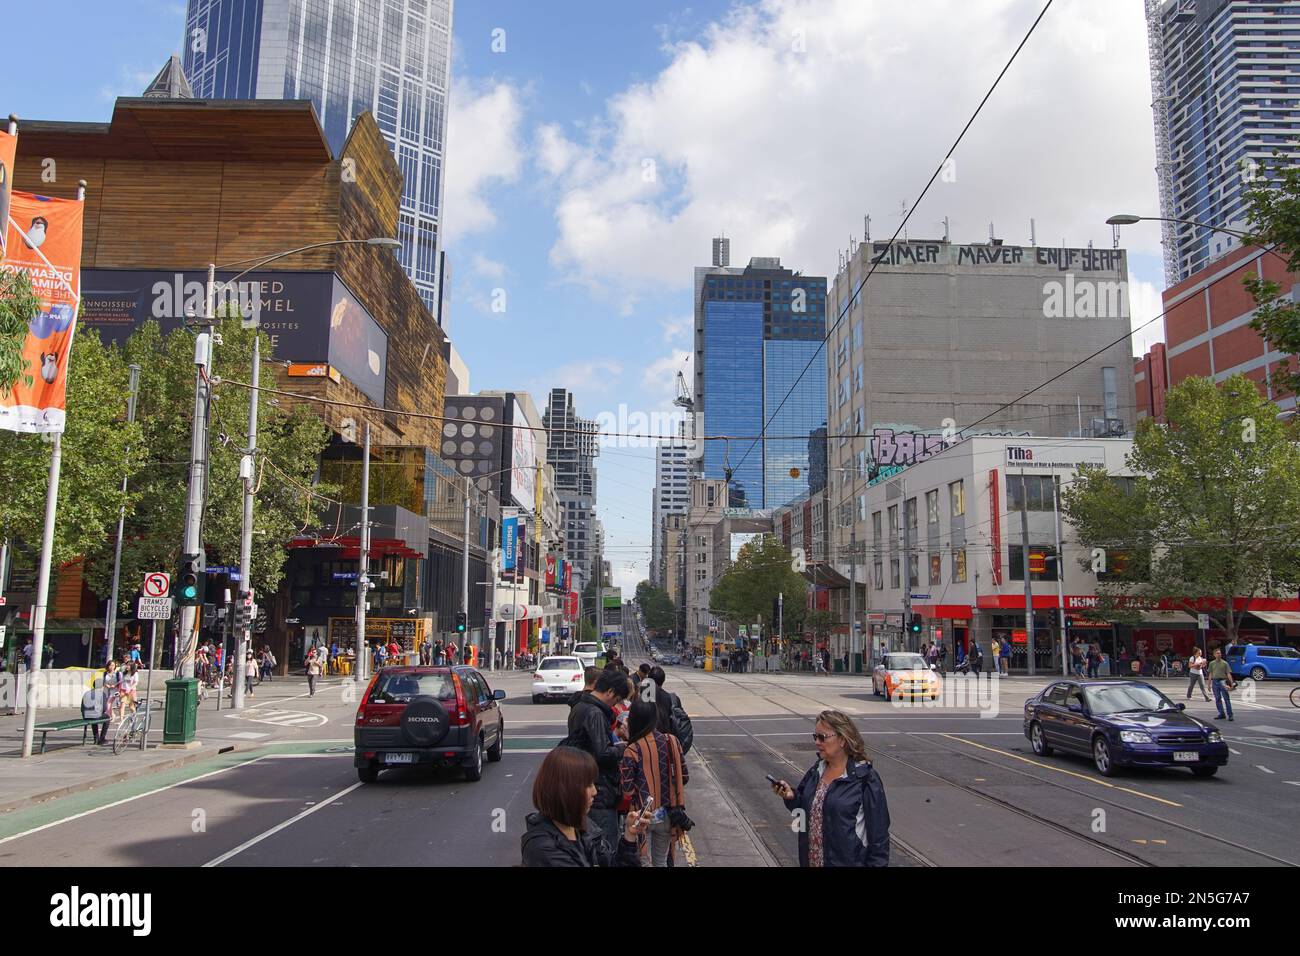 Passagers attendant le tramway à l'intersection de la Trobe Street et Swanston Street dans la ville de Melbourne. Banque D'Images